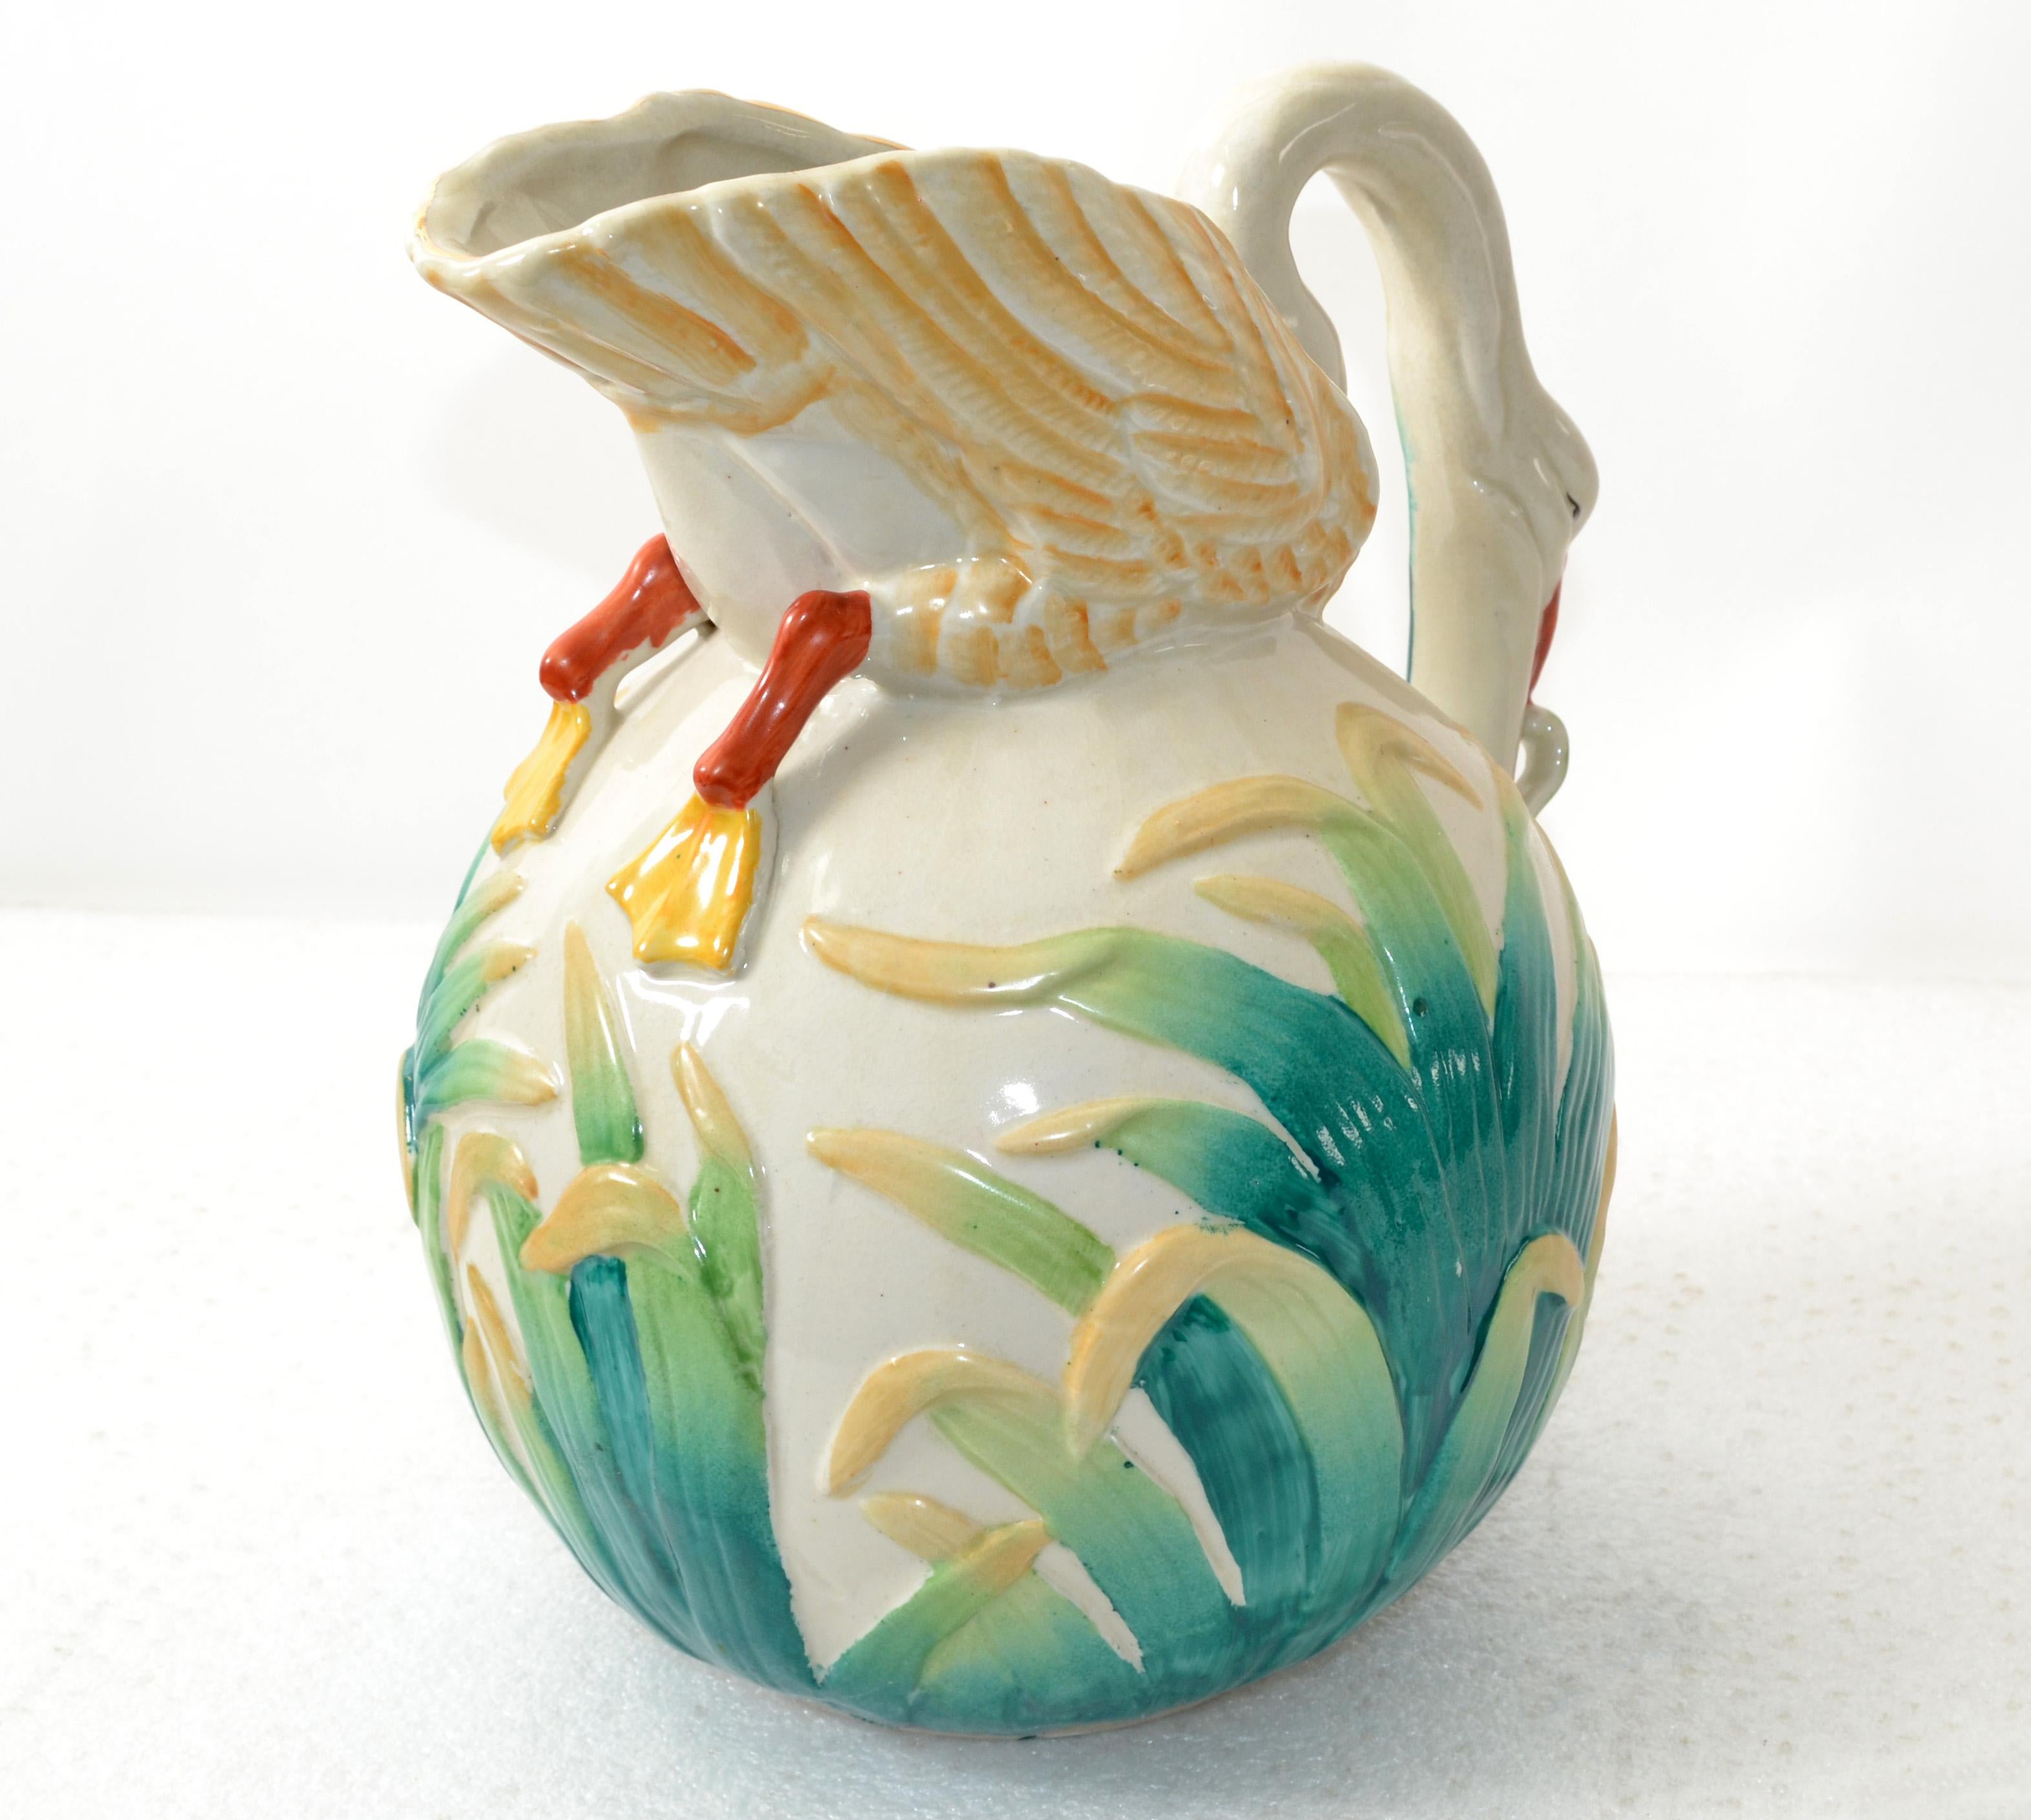 Ce pichet d'eau victorien, pot antique en céramique émaillée et peinte à la main, carafe, a été fabriqué au Japon, vers 1890.
Le Pitcher a pris pour thème un cygne en train de brouter dans une rizière. L'ouverture est bordée d'une feuille